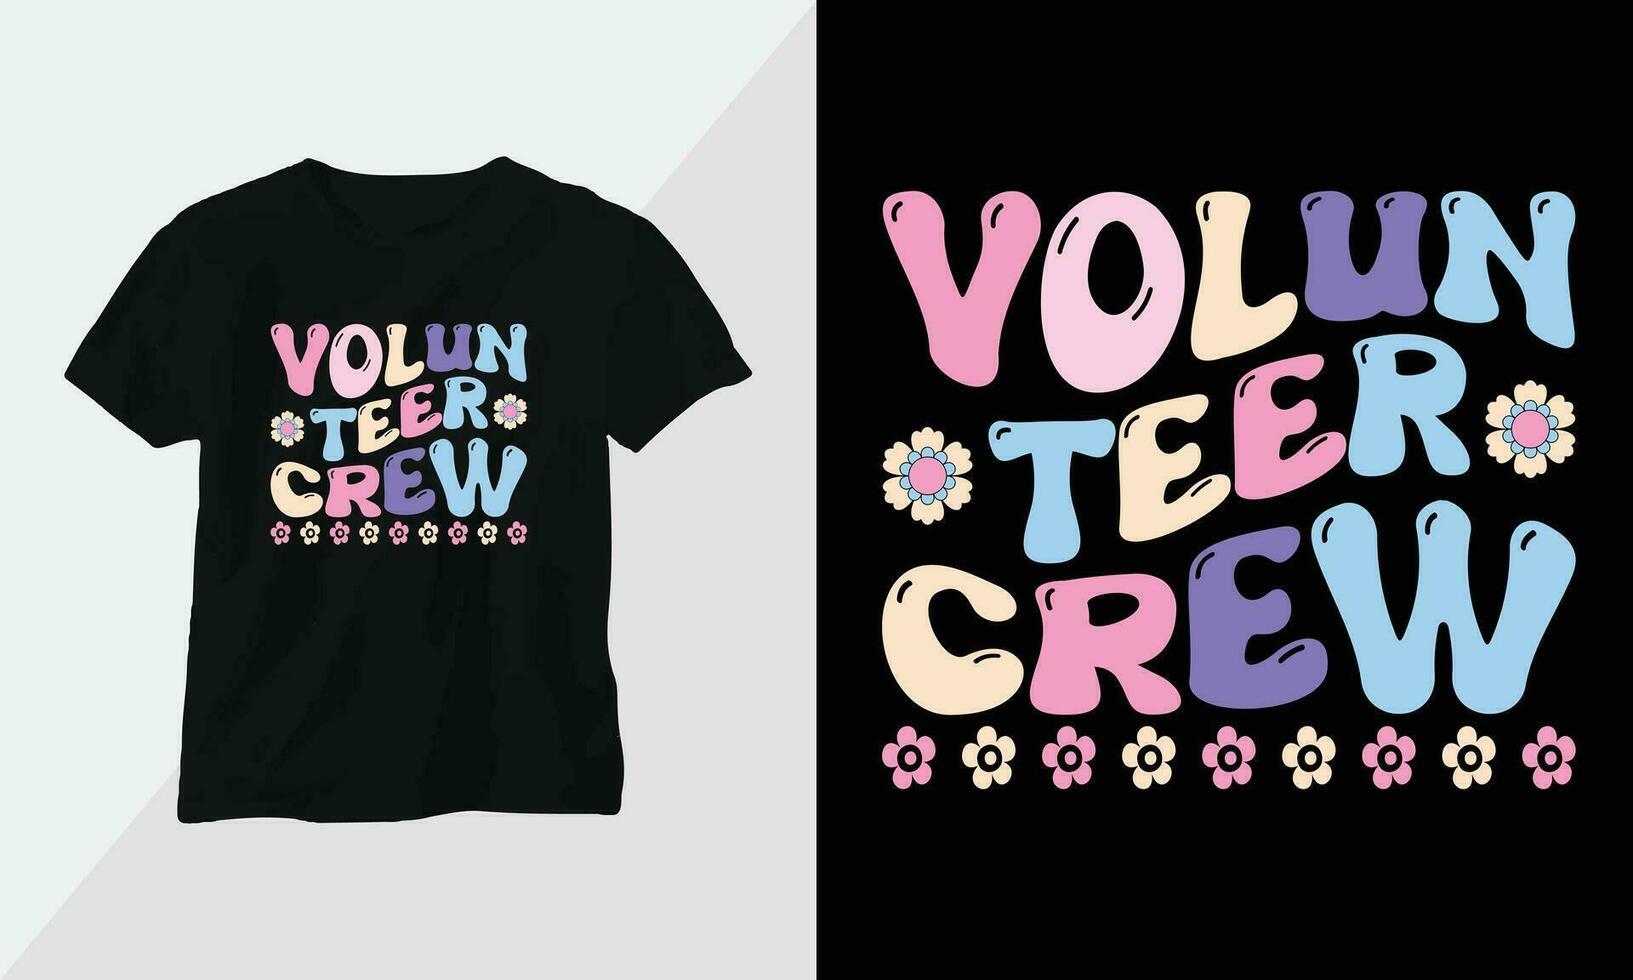 vrijwilliger bemanning - retro groovy inspirerend t-shirt ontwerp met retro stijl vector